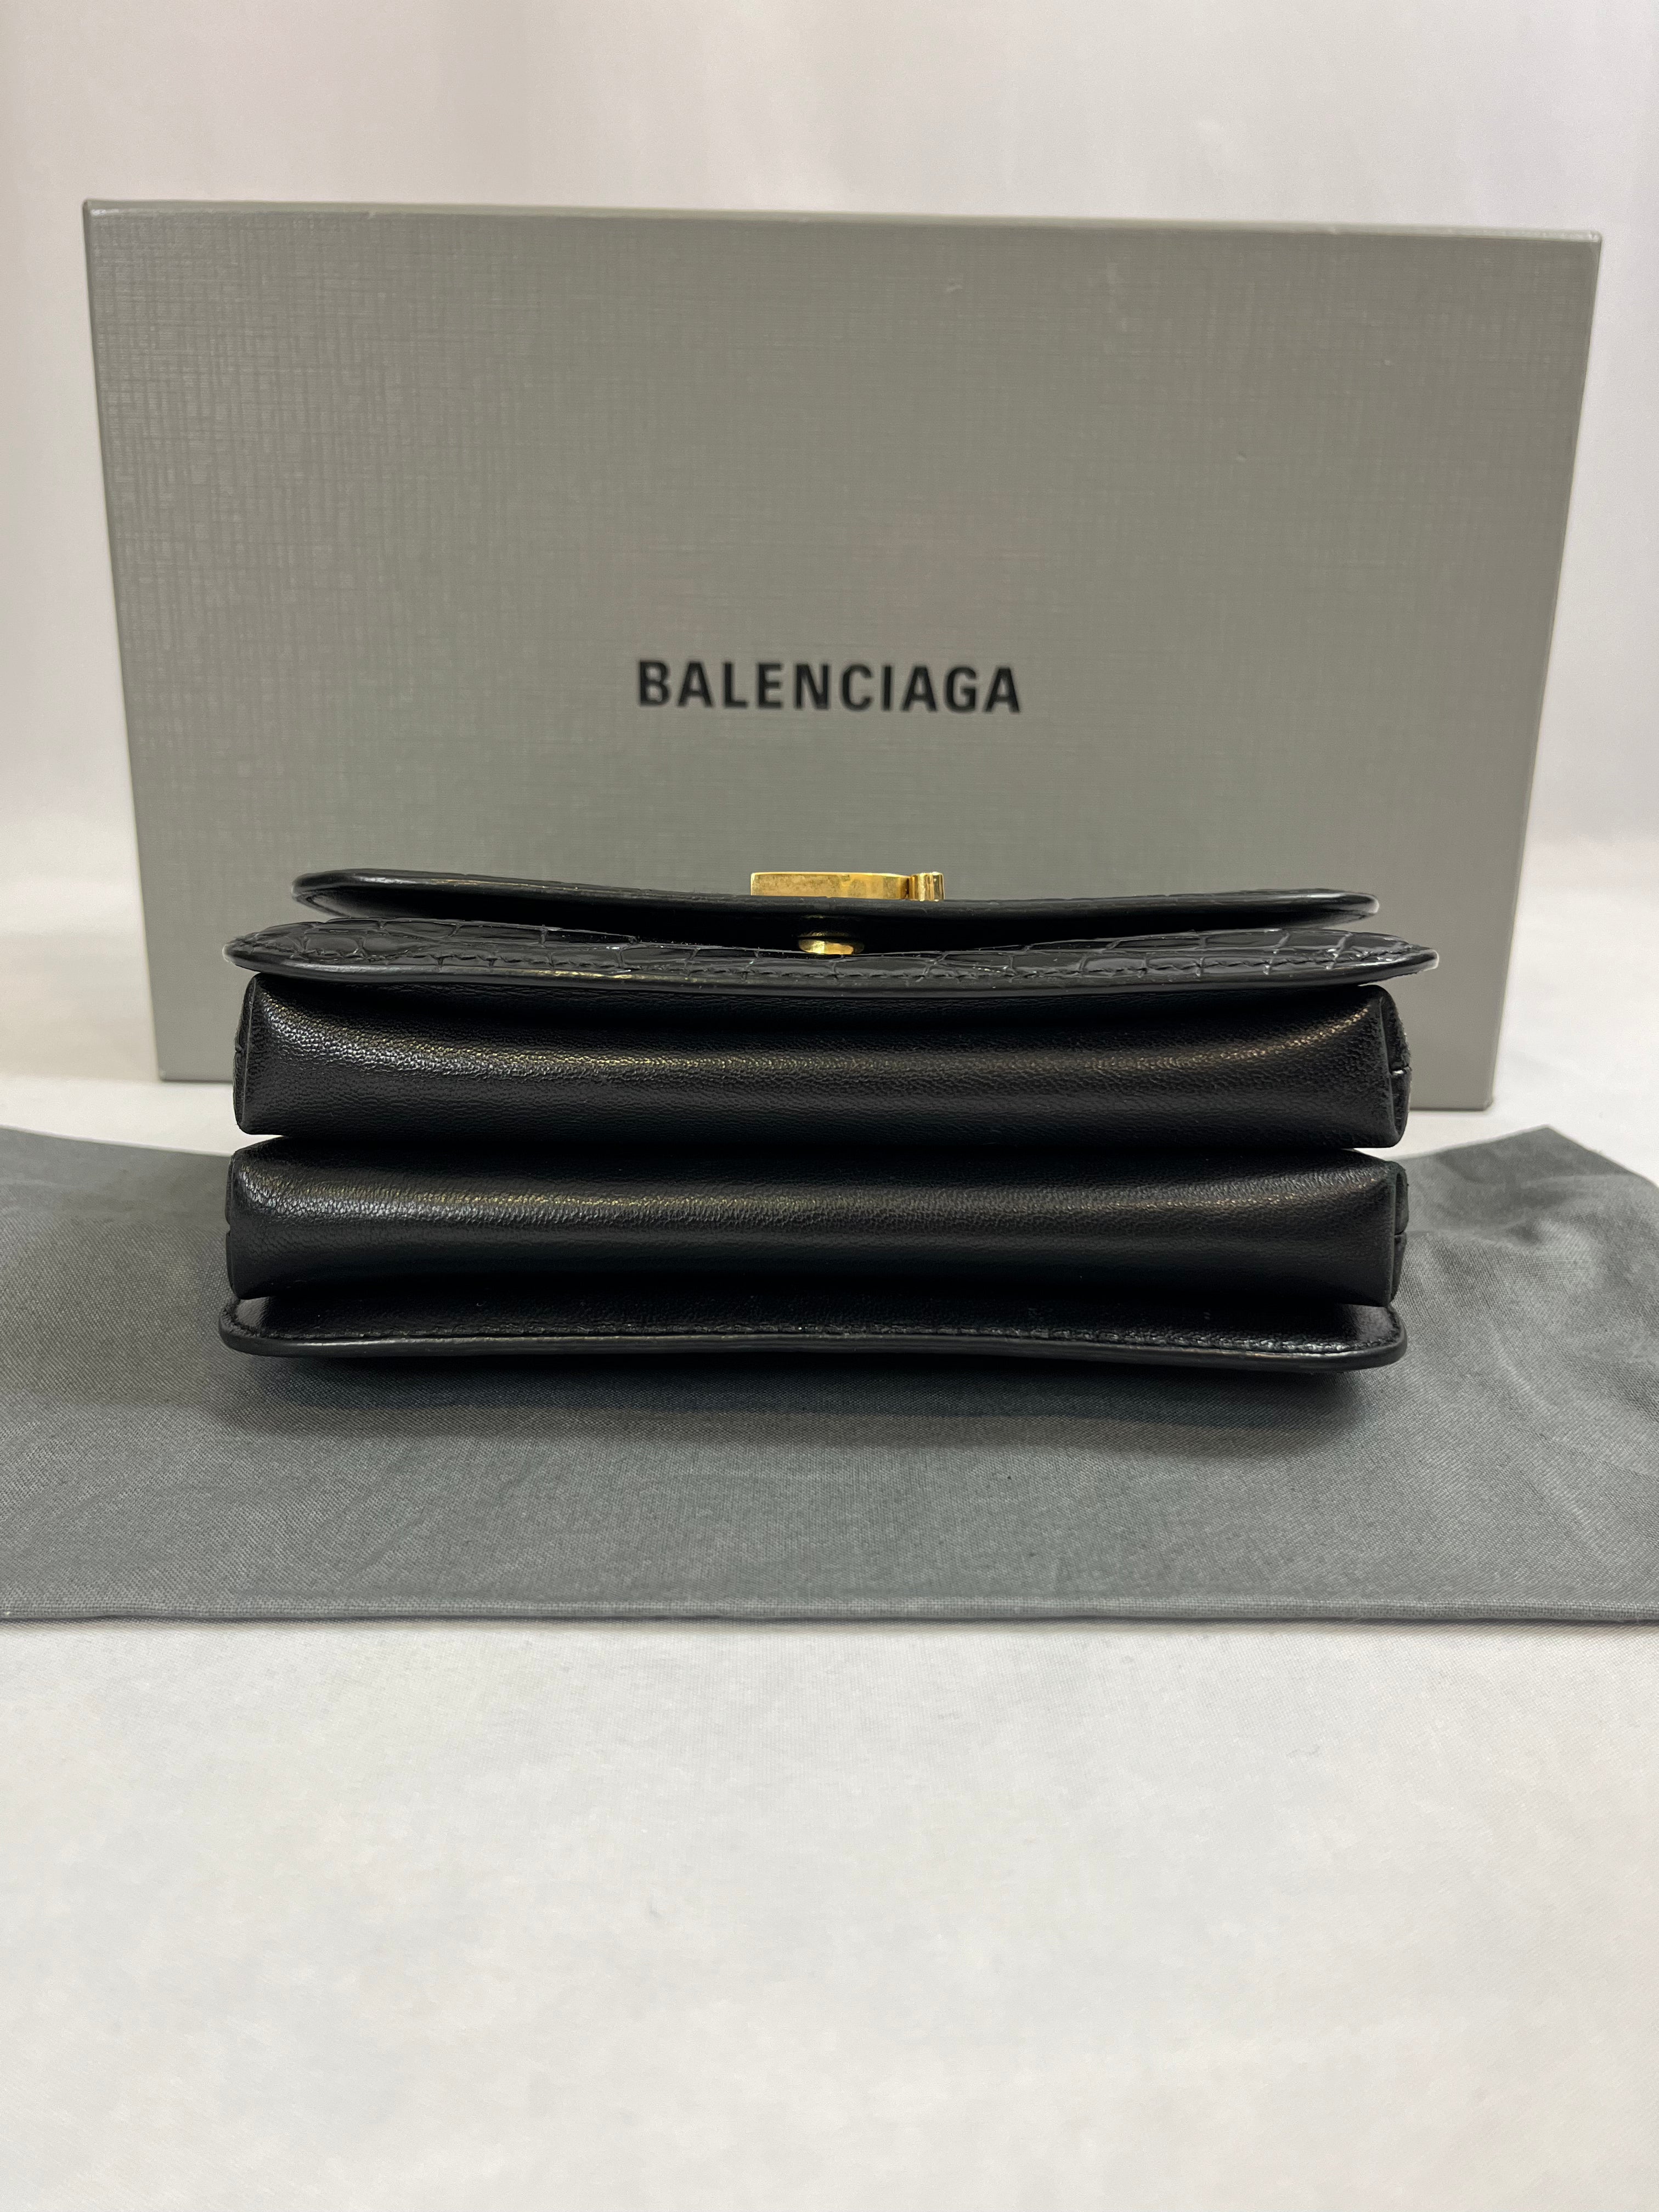 Balenciaga - Sac bandoulière B croco embossé